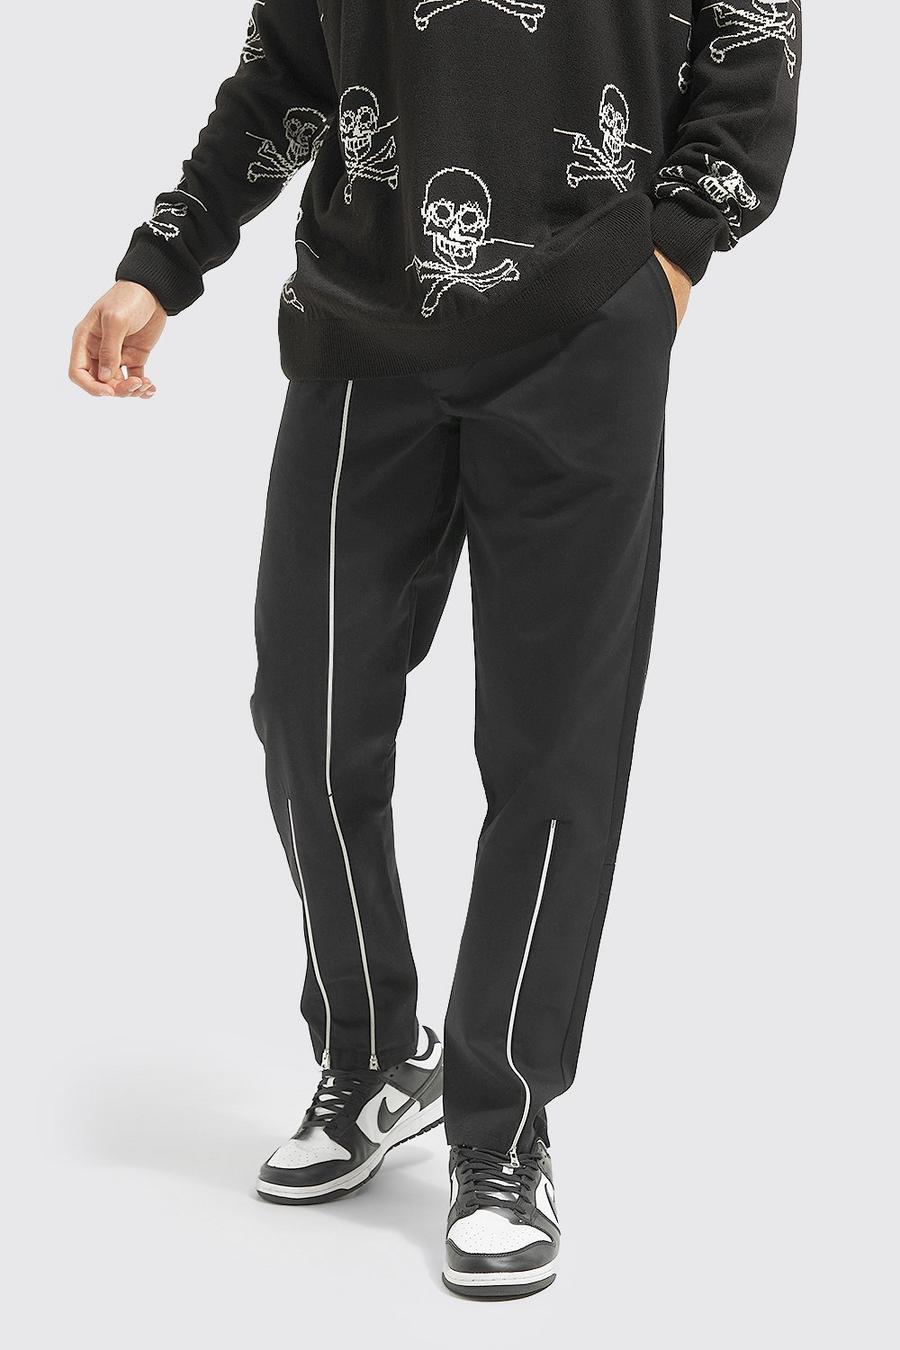 Hose mit geradem Bein und Reißverschluss-Detail, Black schwarz